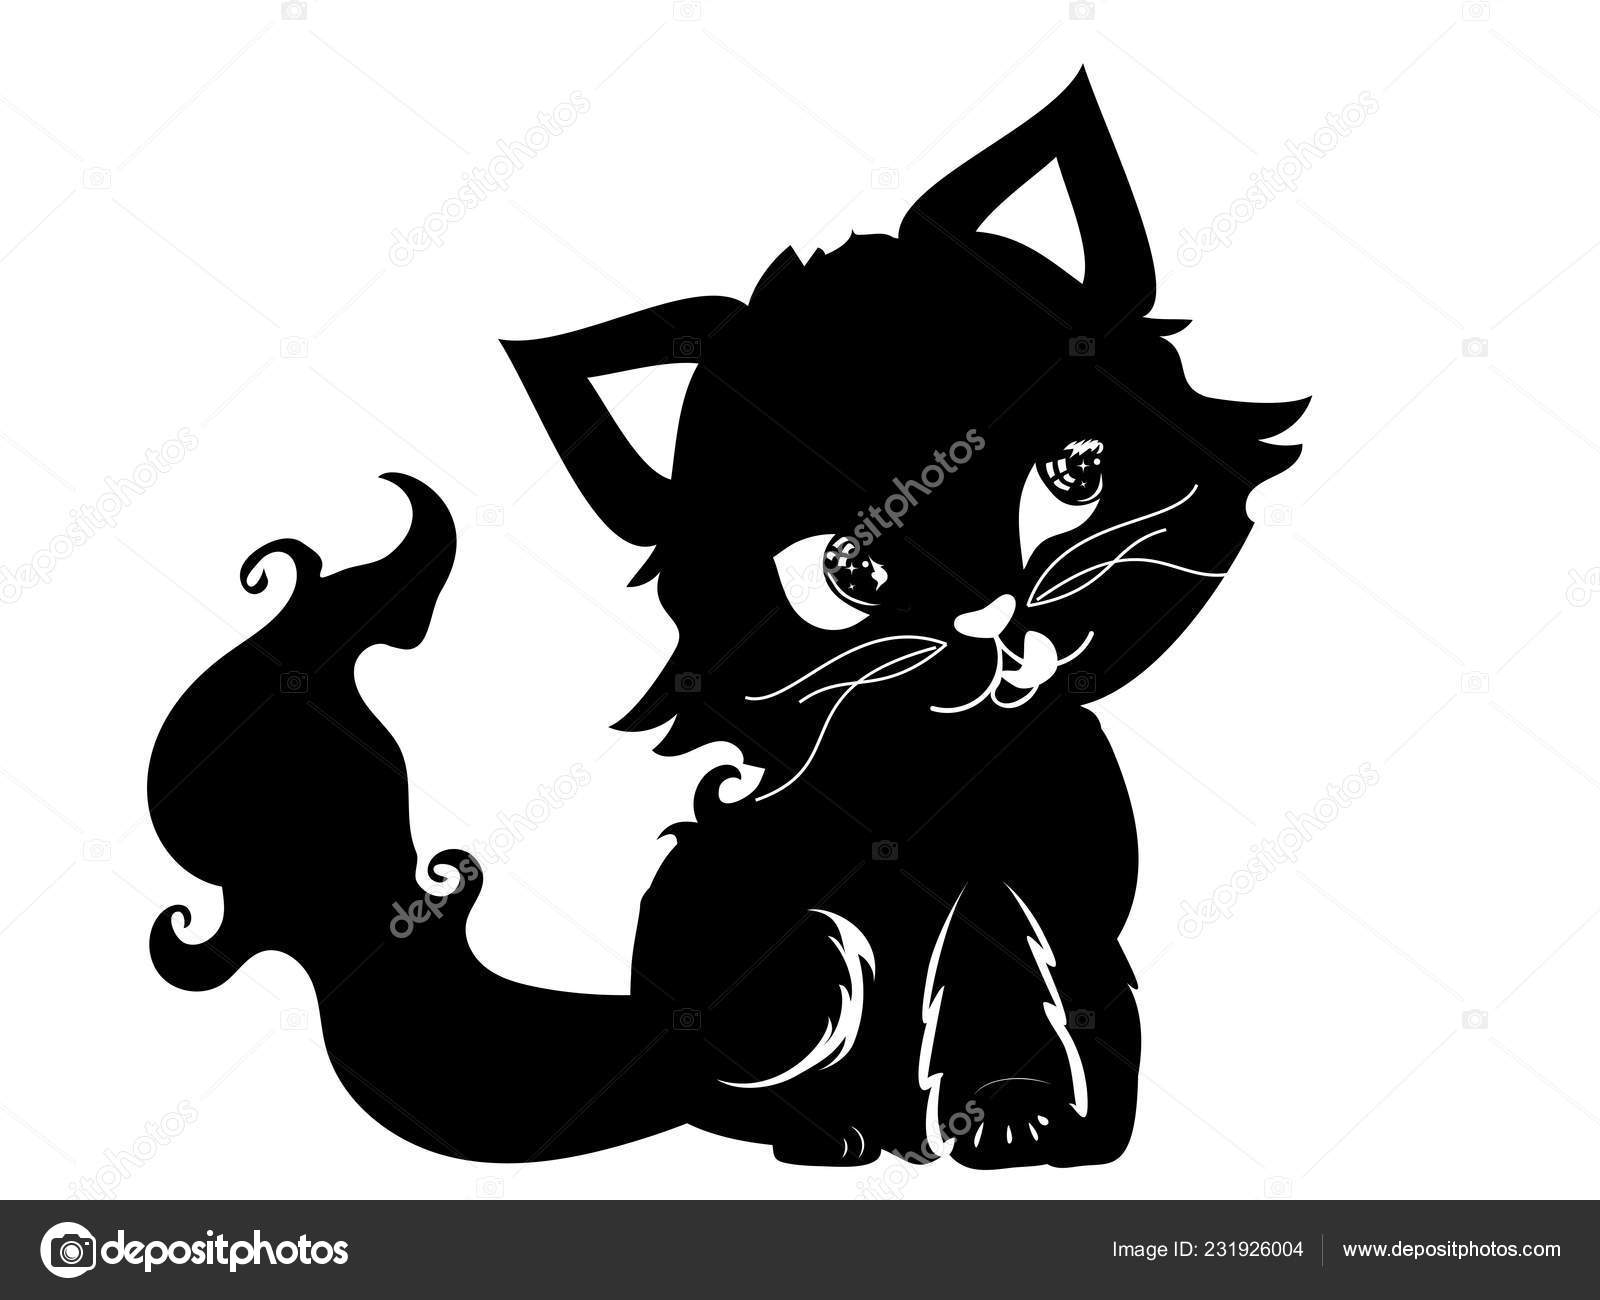  Silhouette  vectorielle d un chat  aux ailes noires  Image 